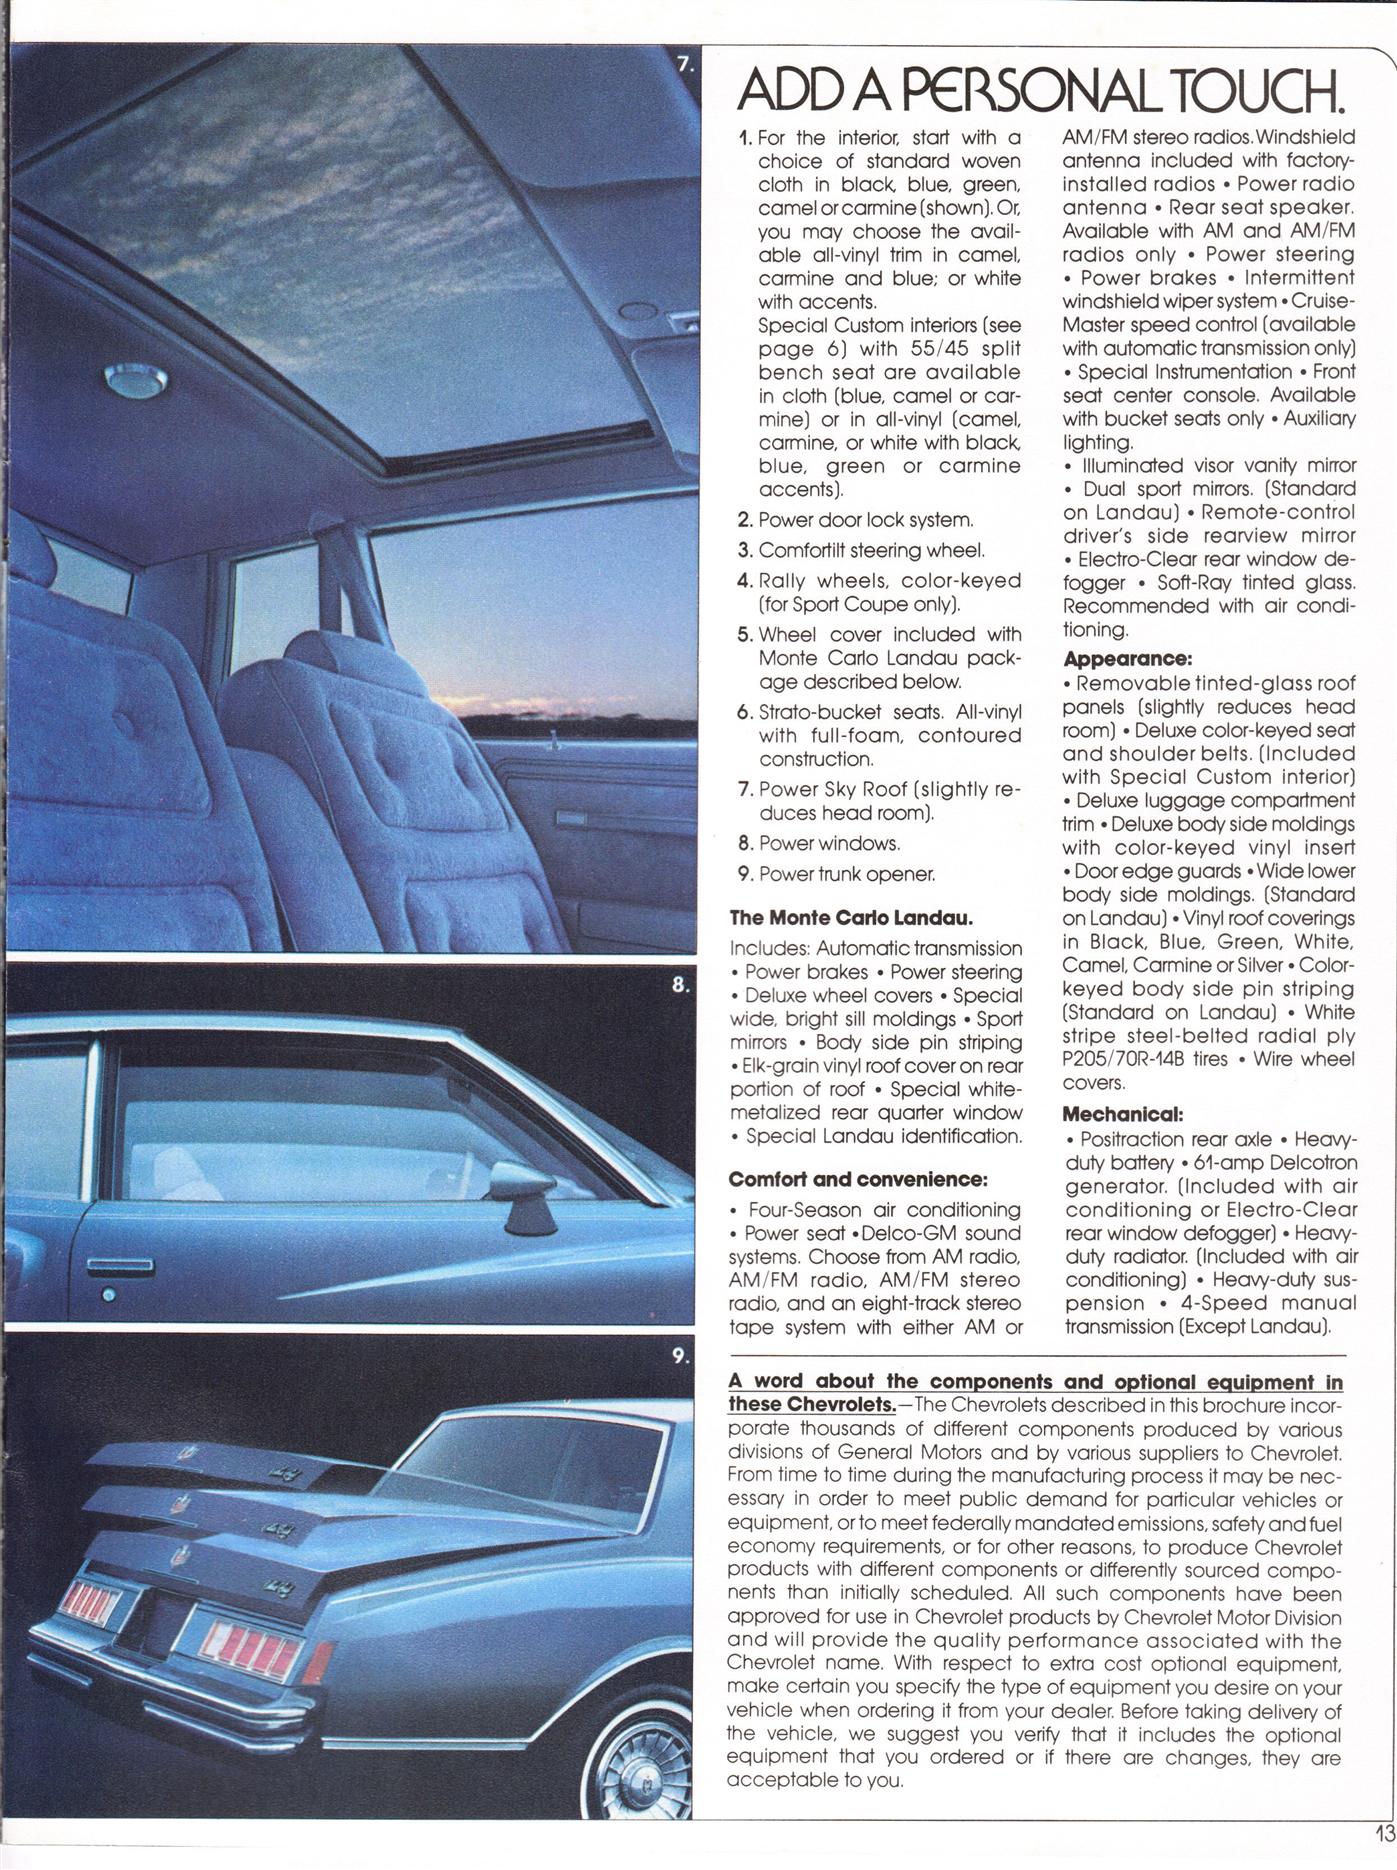 1978 Chevrolet Monte Carlo Brochure Page 1